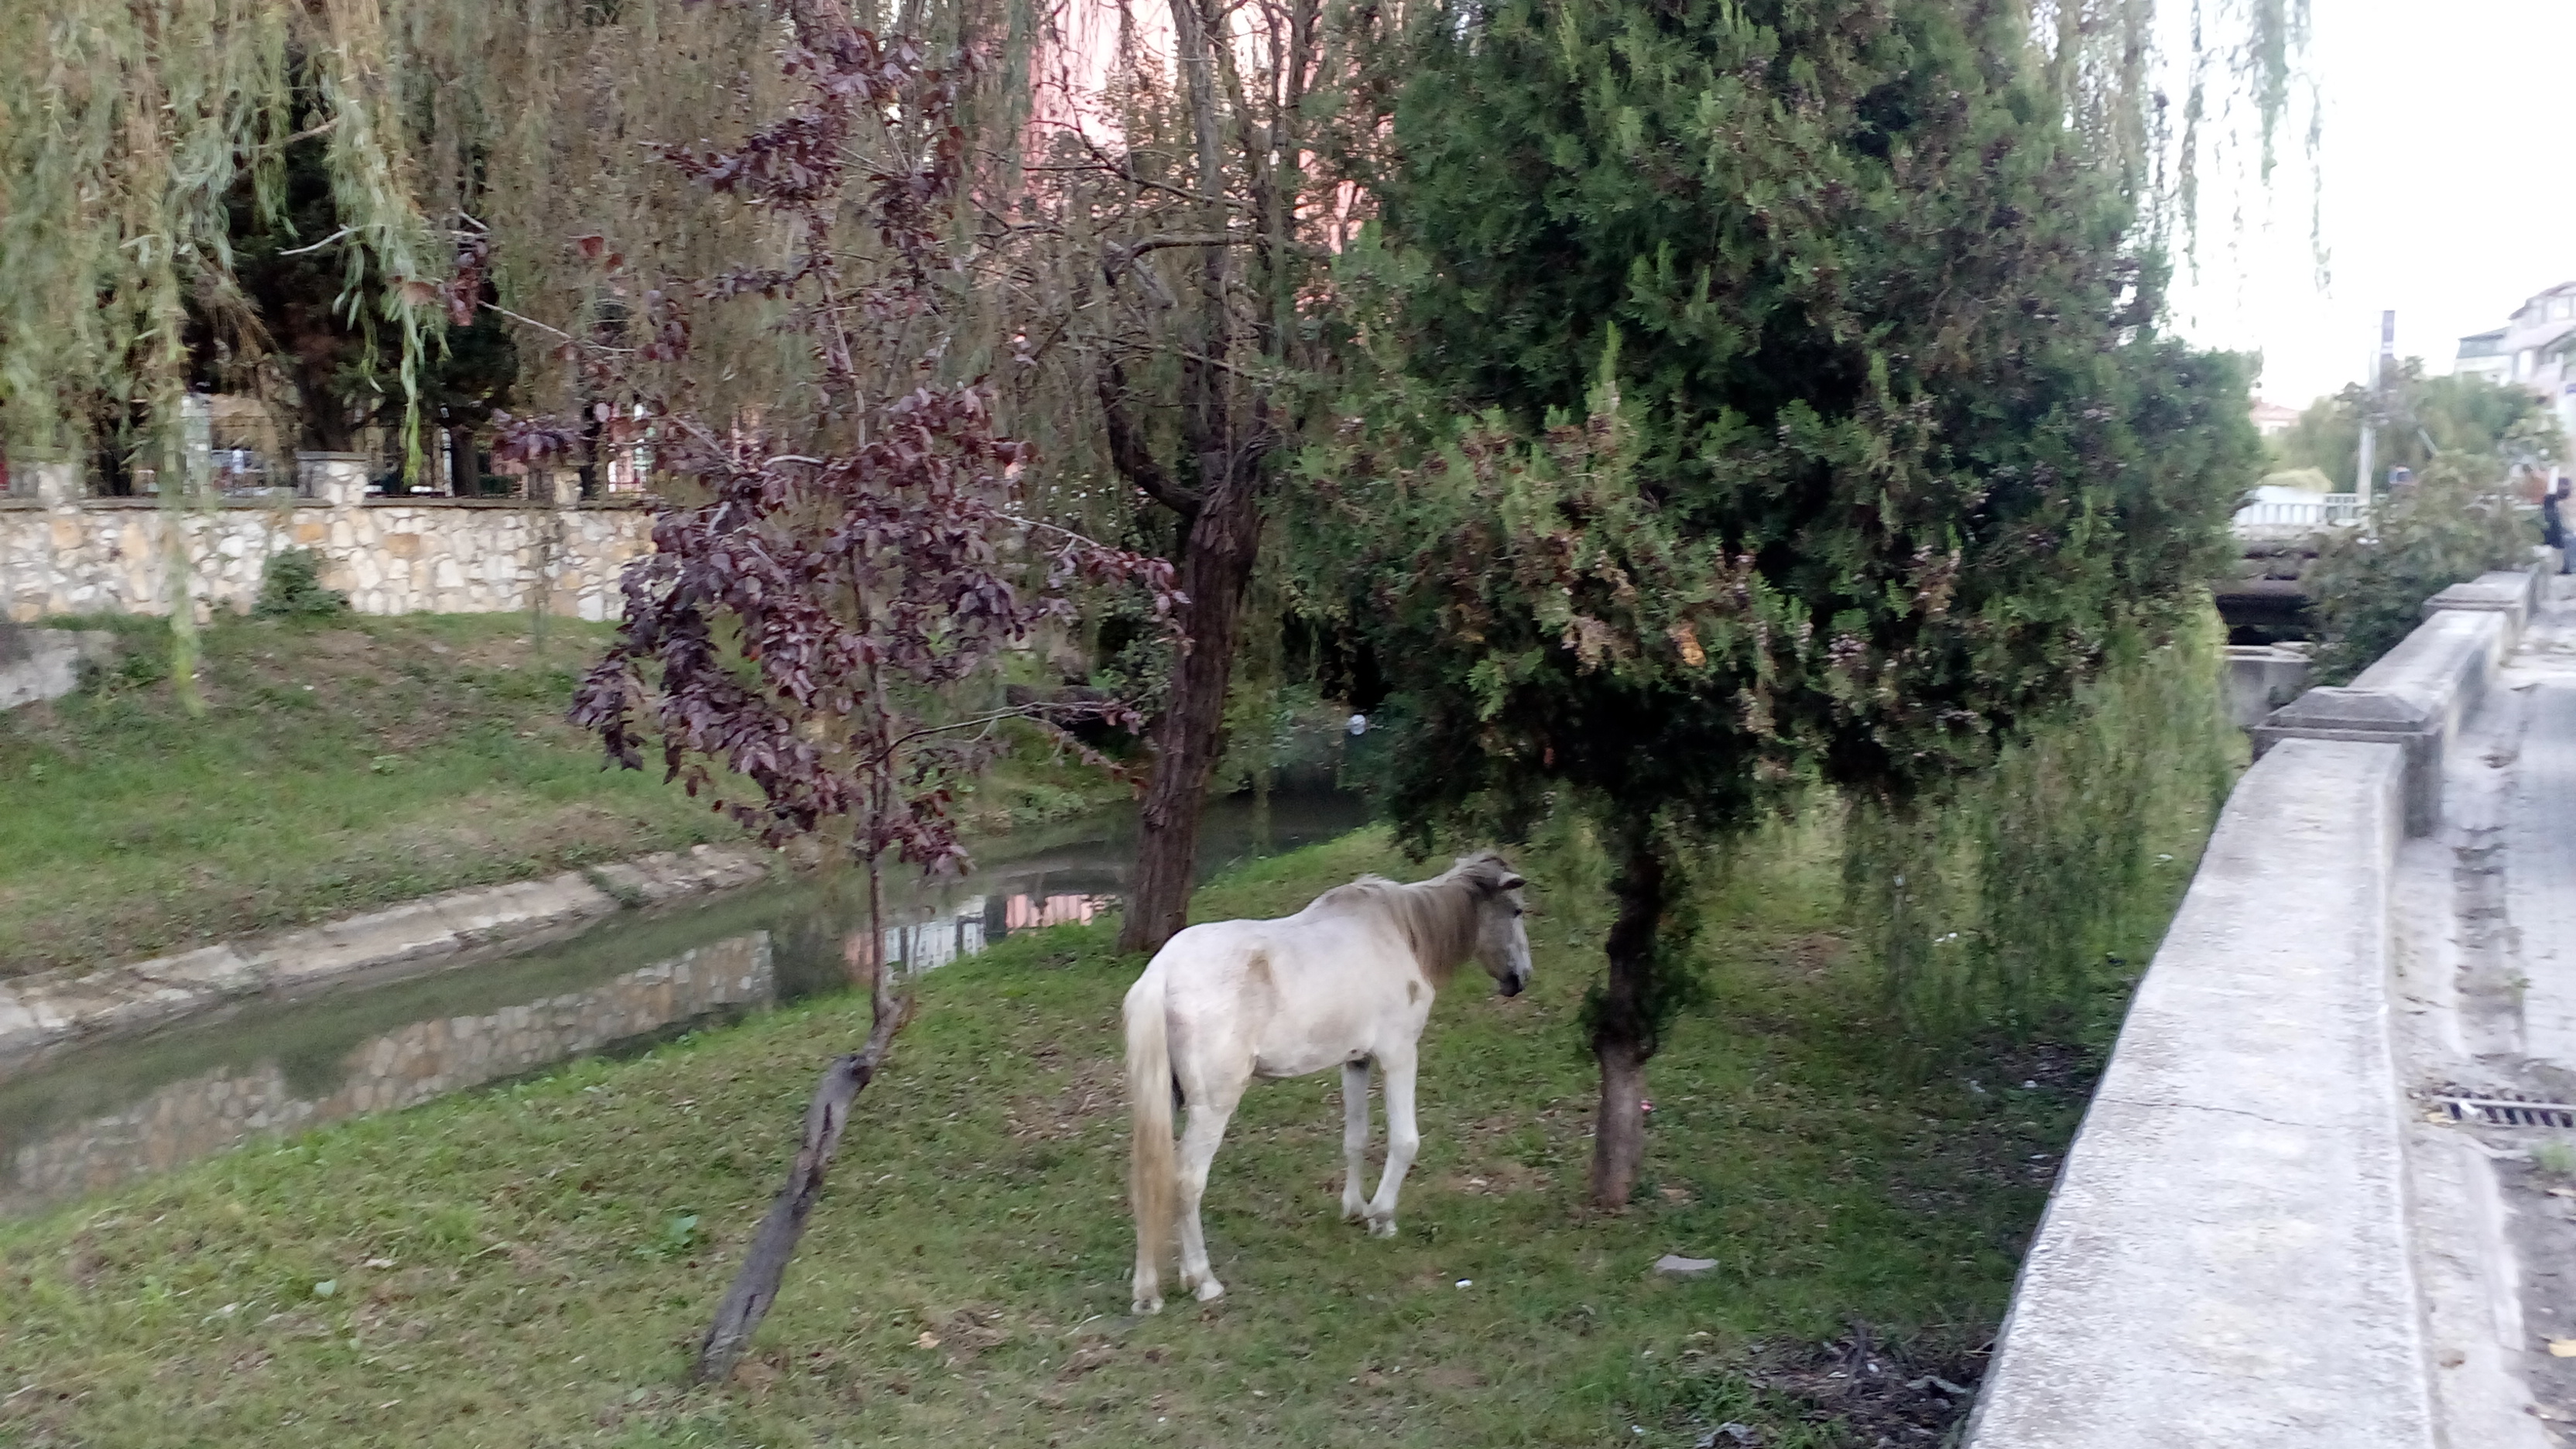 Kır At,  Marmara'ya akan derenin kıyısında vefasızlığa isyan ediyor 